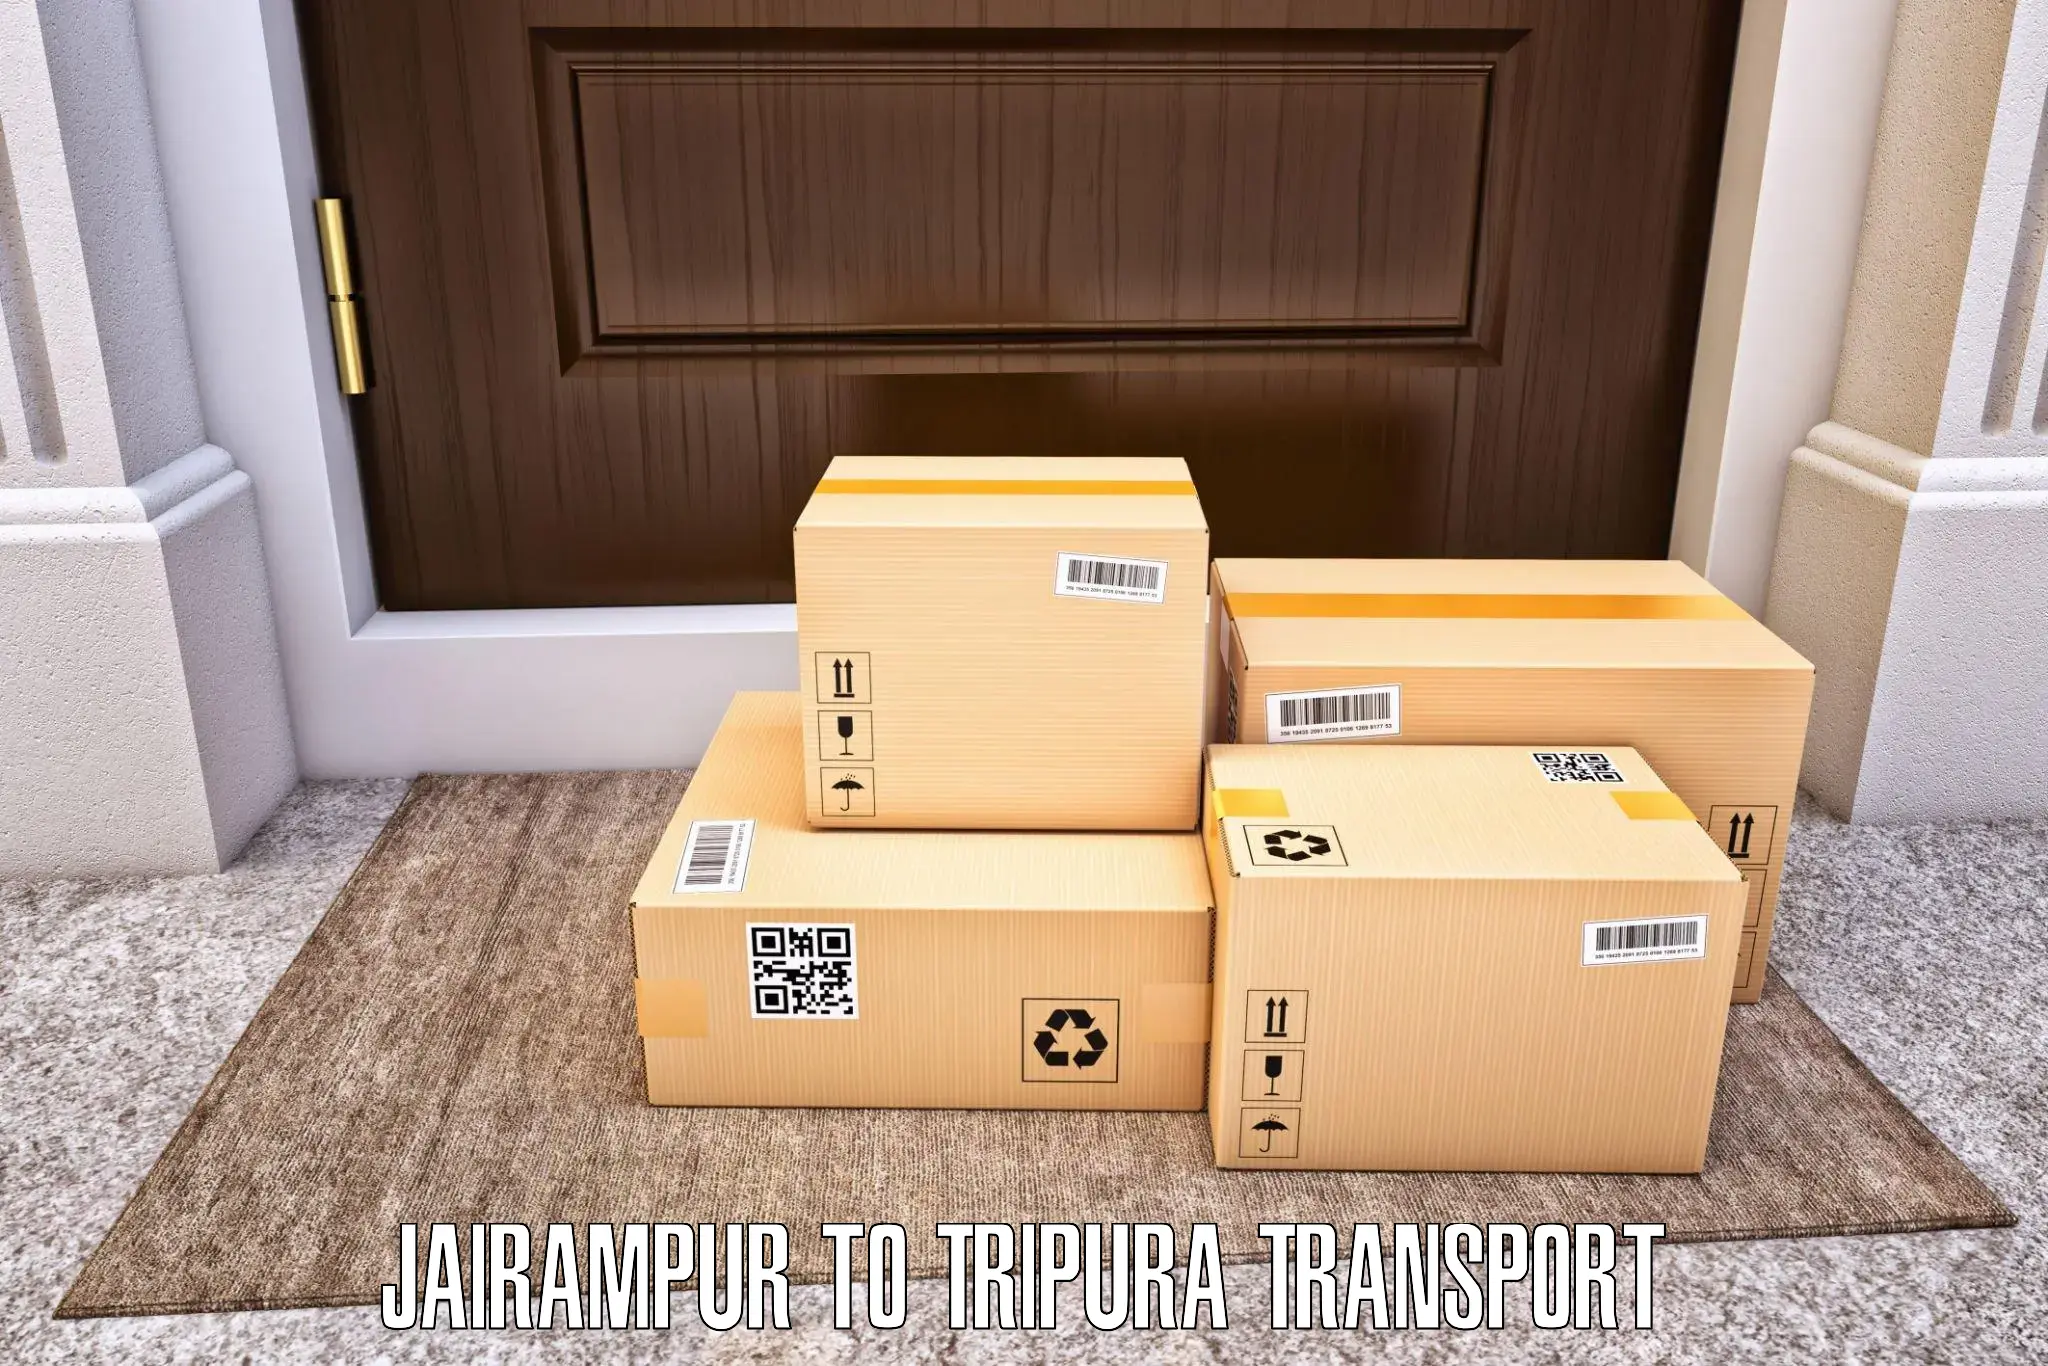 Vehicle transport services Jairampur to IIIT Agartala